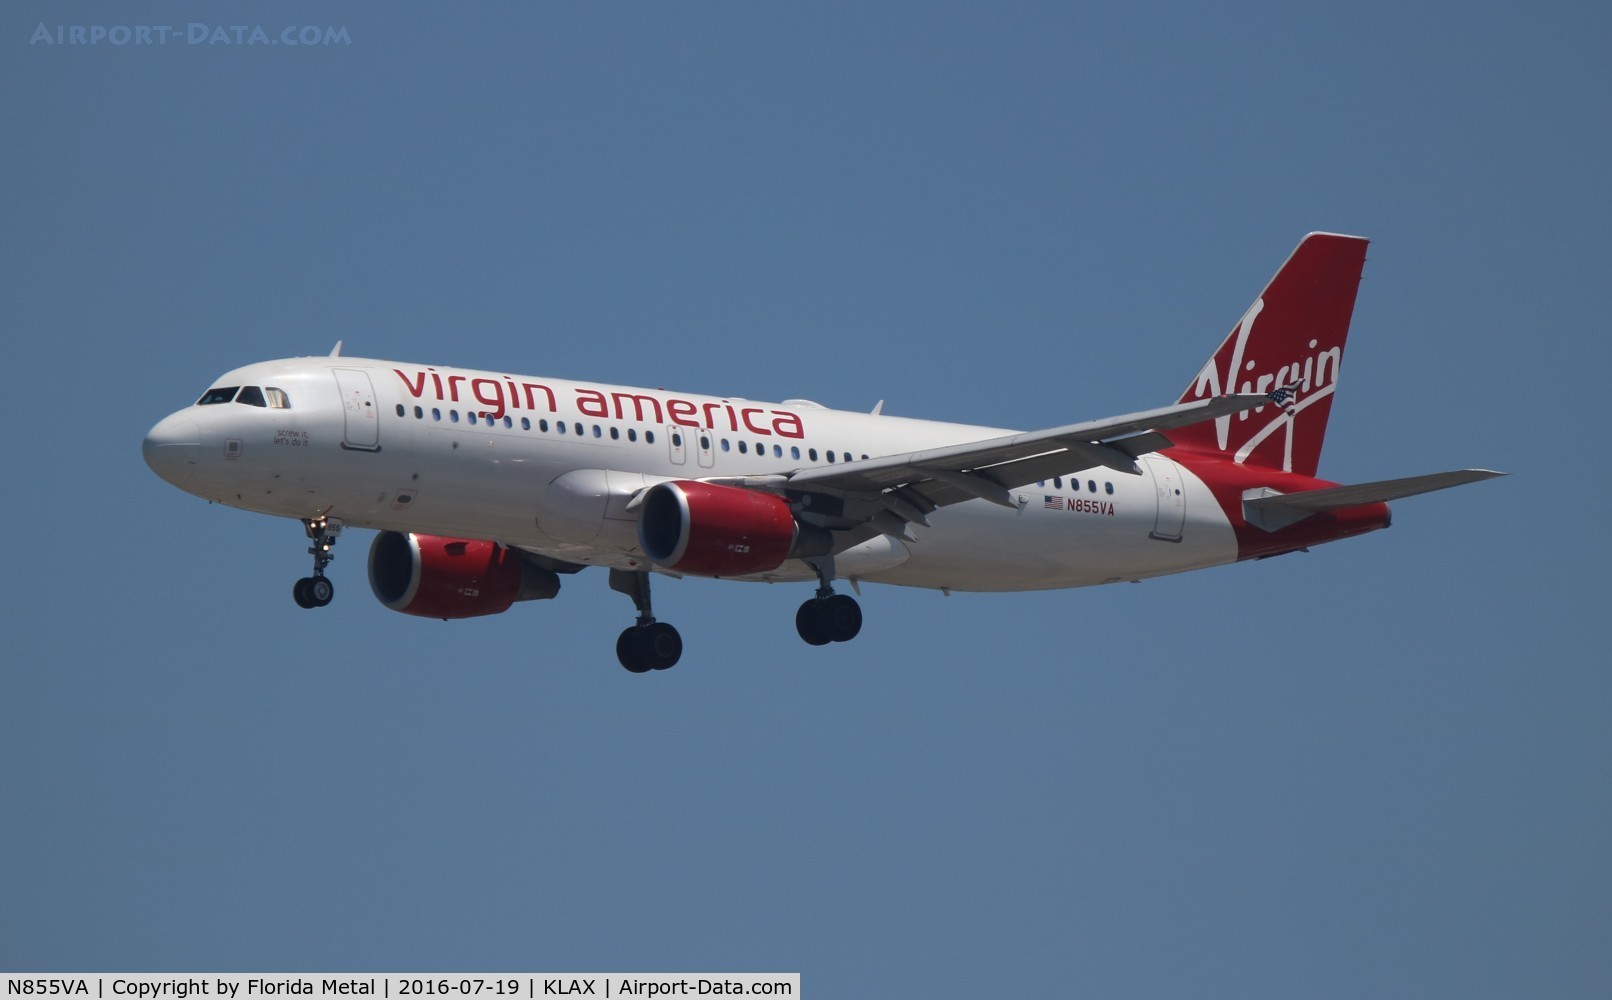 N855VA, 2012 Airbus A320-214 C/N 5179, Virgin America